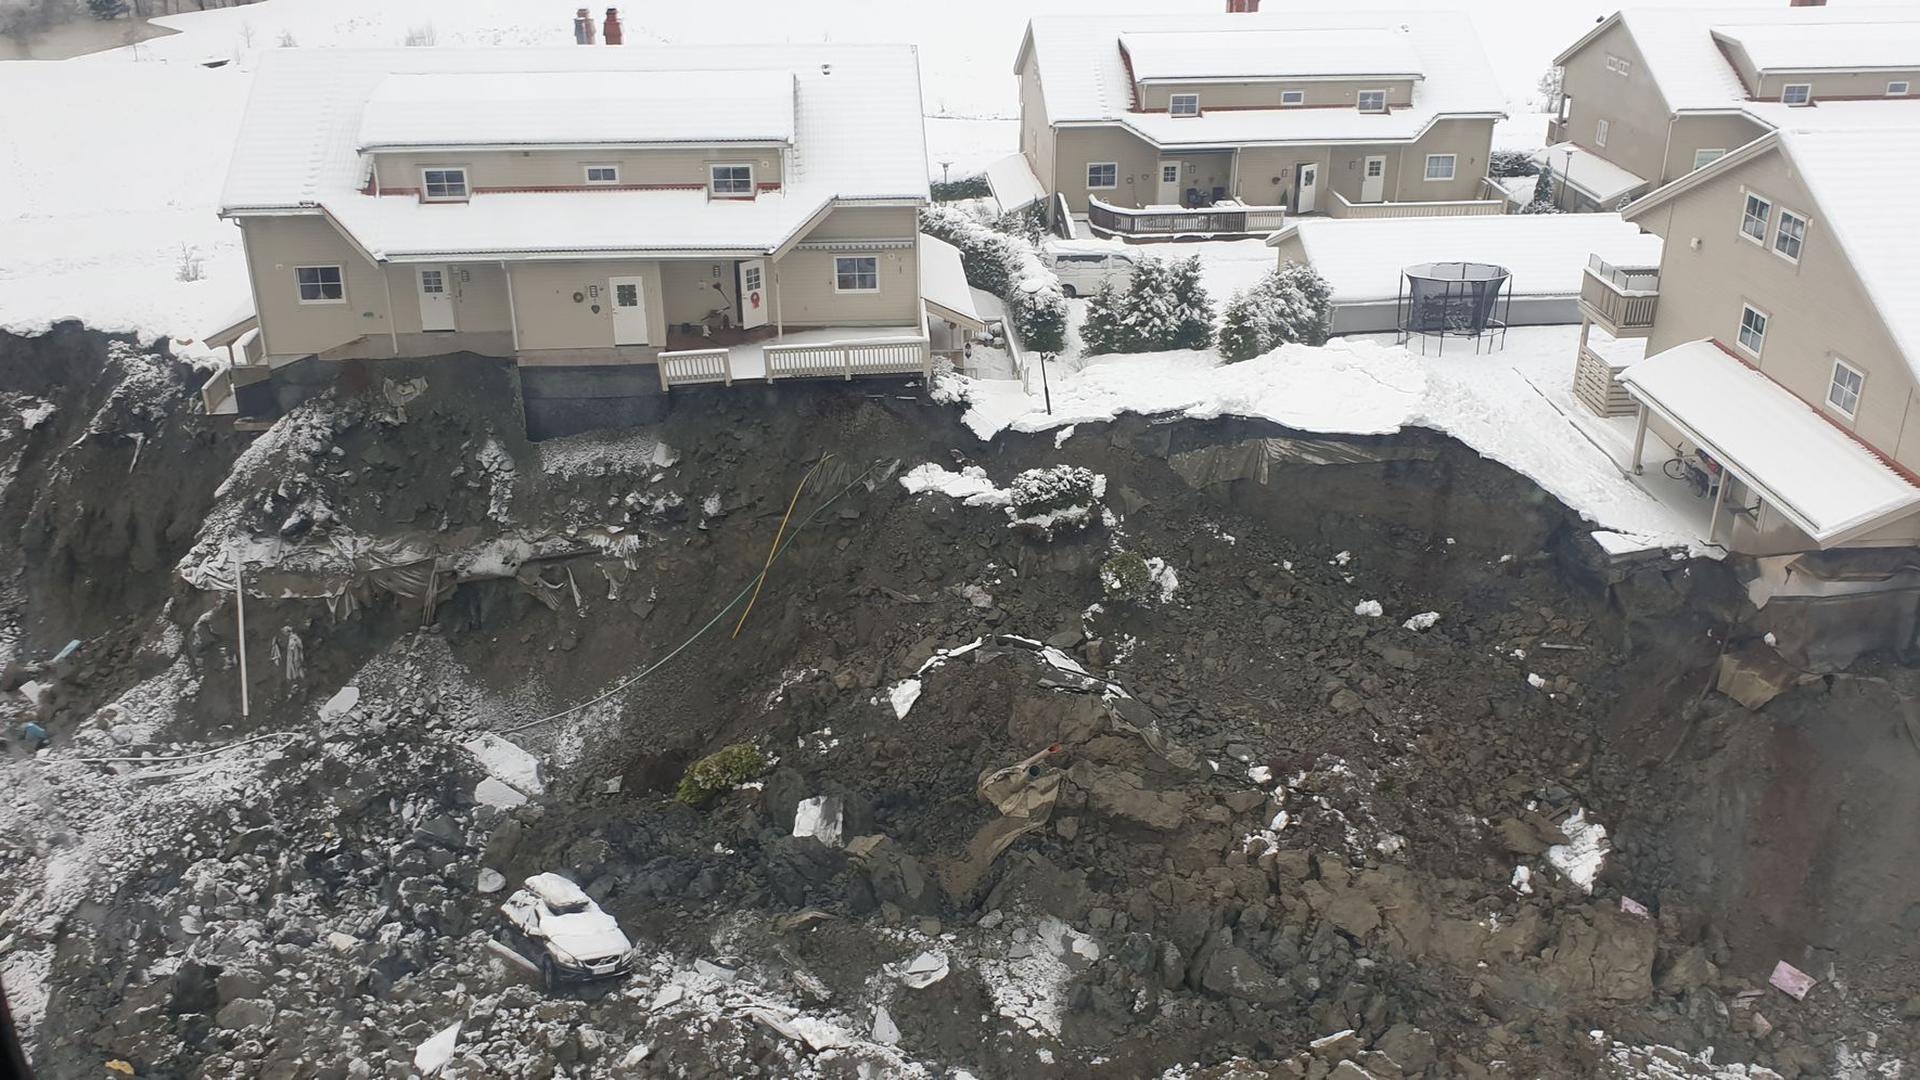 Der Erdrutsch in der Kommune Gjerdrum hat großen Schaden hinterlassen und zahlreiche Häuser zerstört.